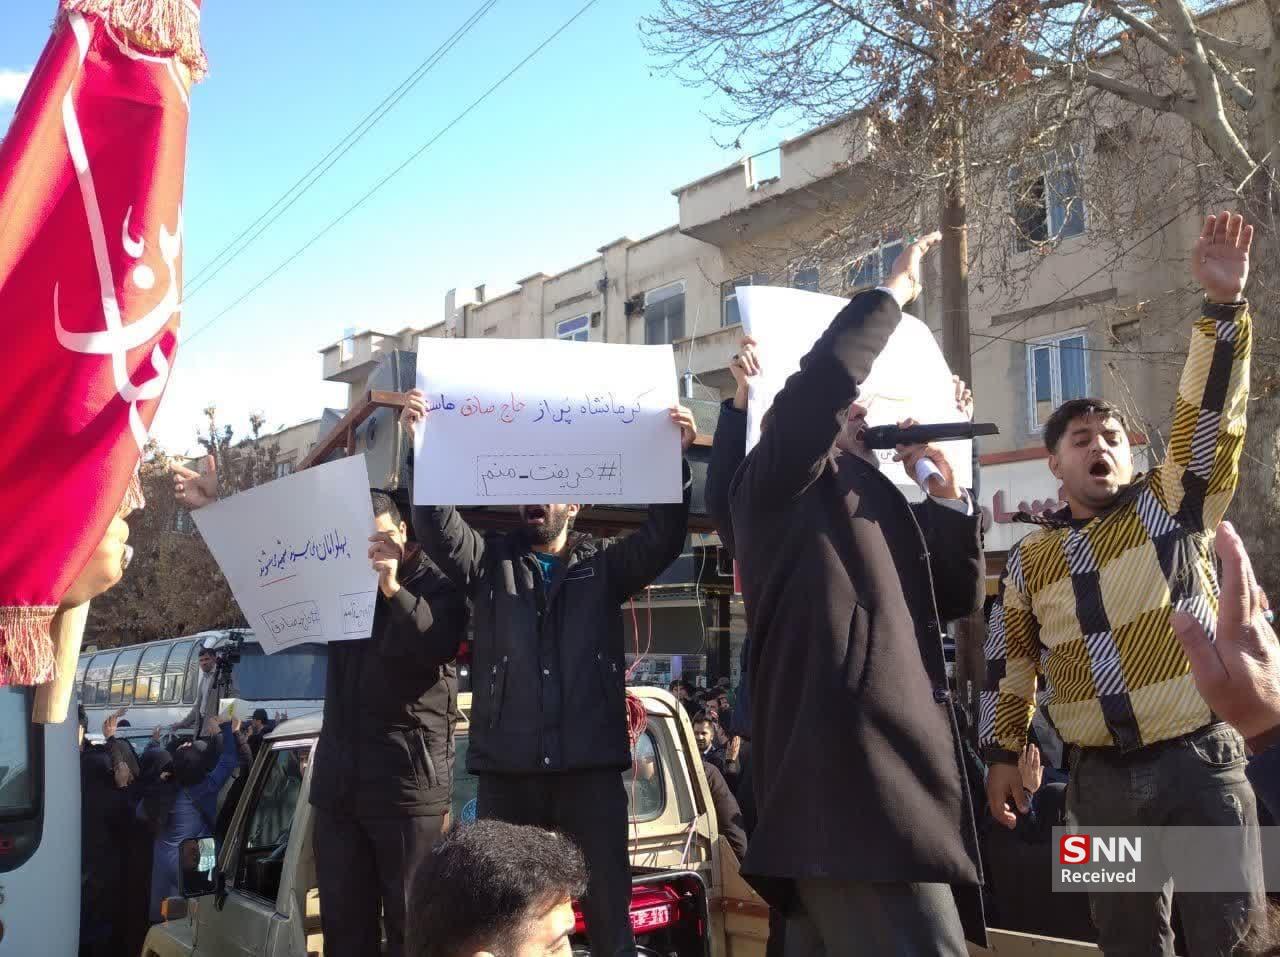 پیکر شهید امیدوار در حضور مردم کرمانشاه تشییع شد / مطالبه دانشجویان برای انتقام خون شهید راه قدس +فیلم